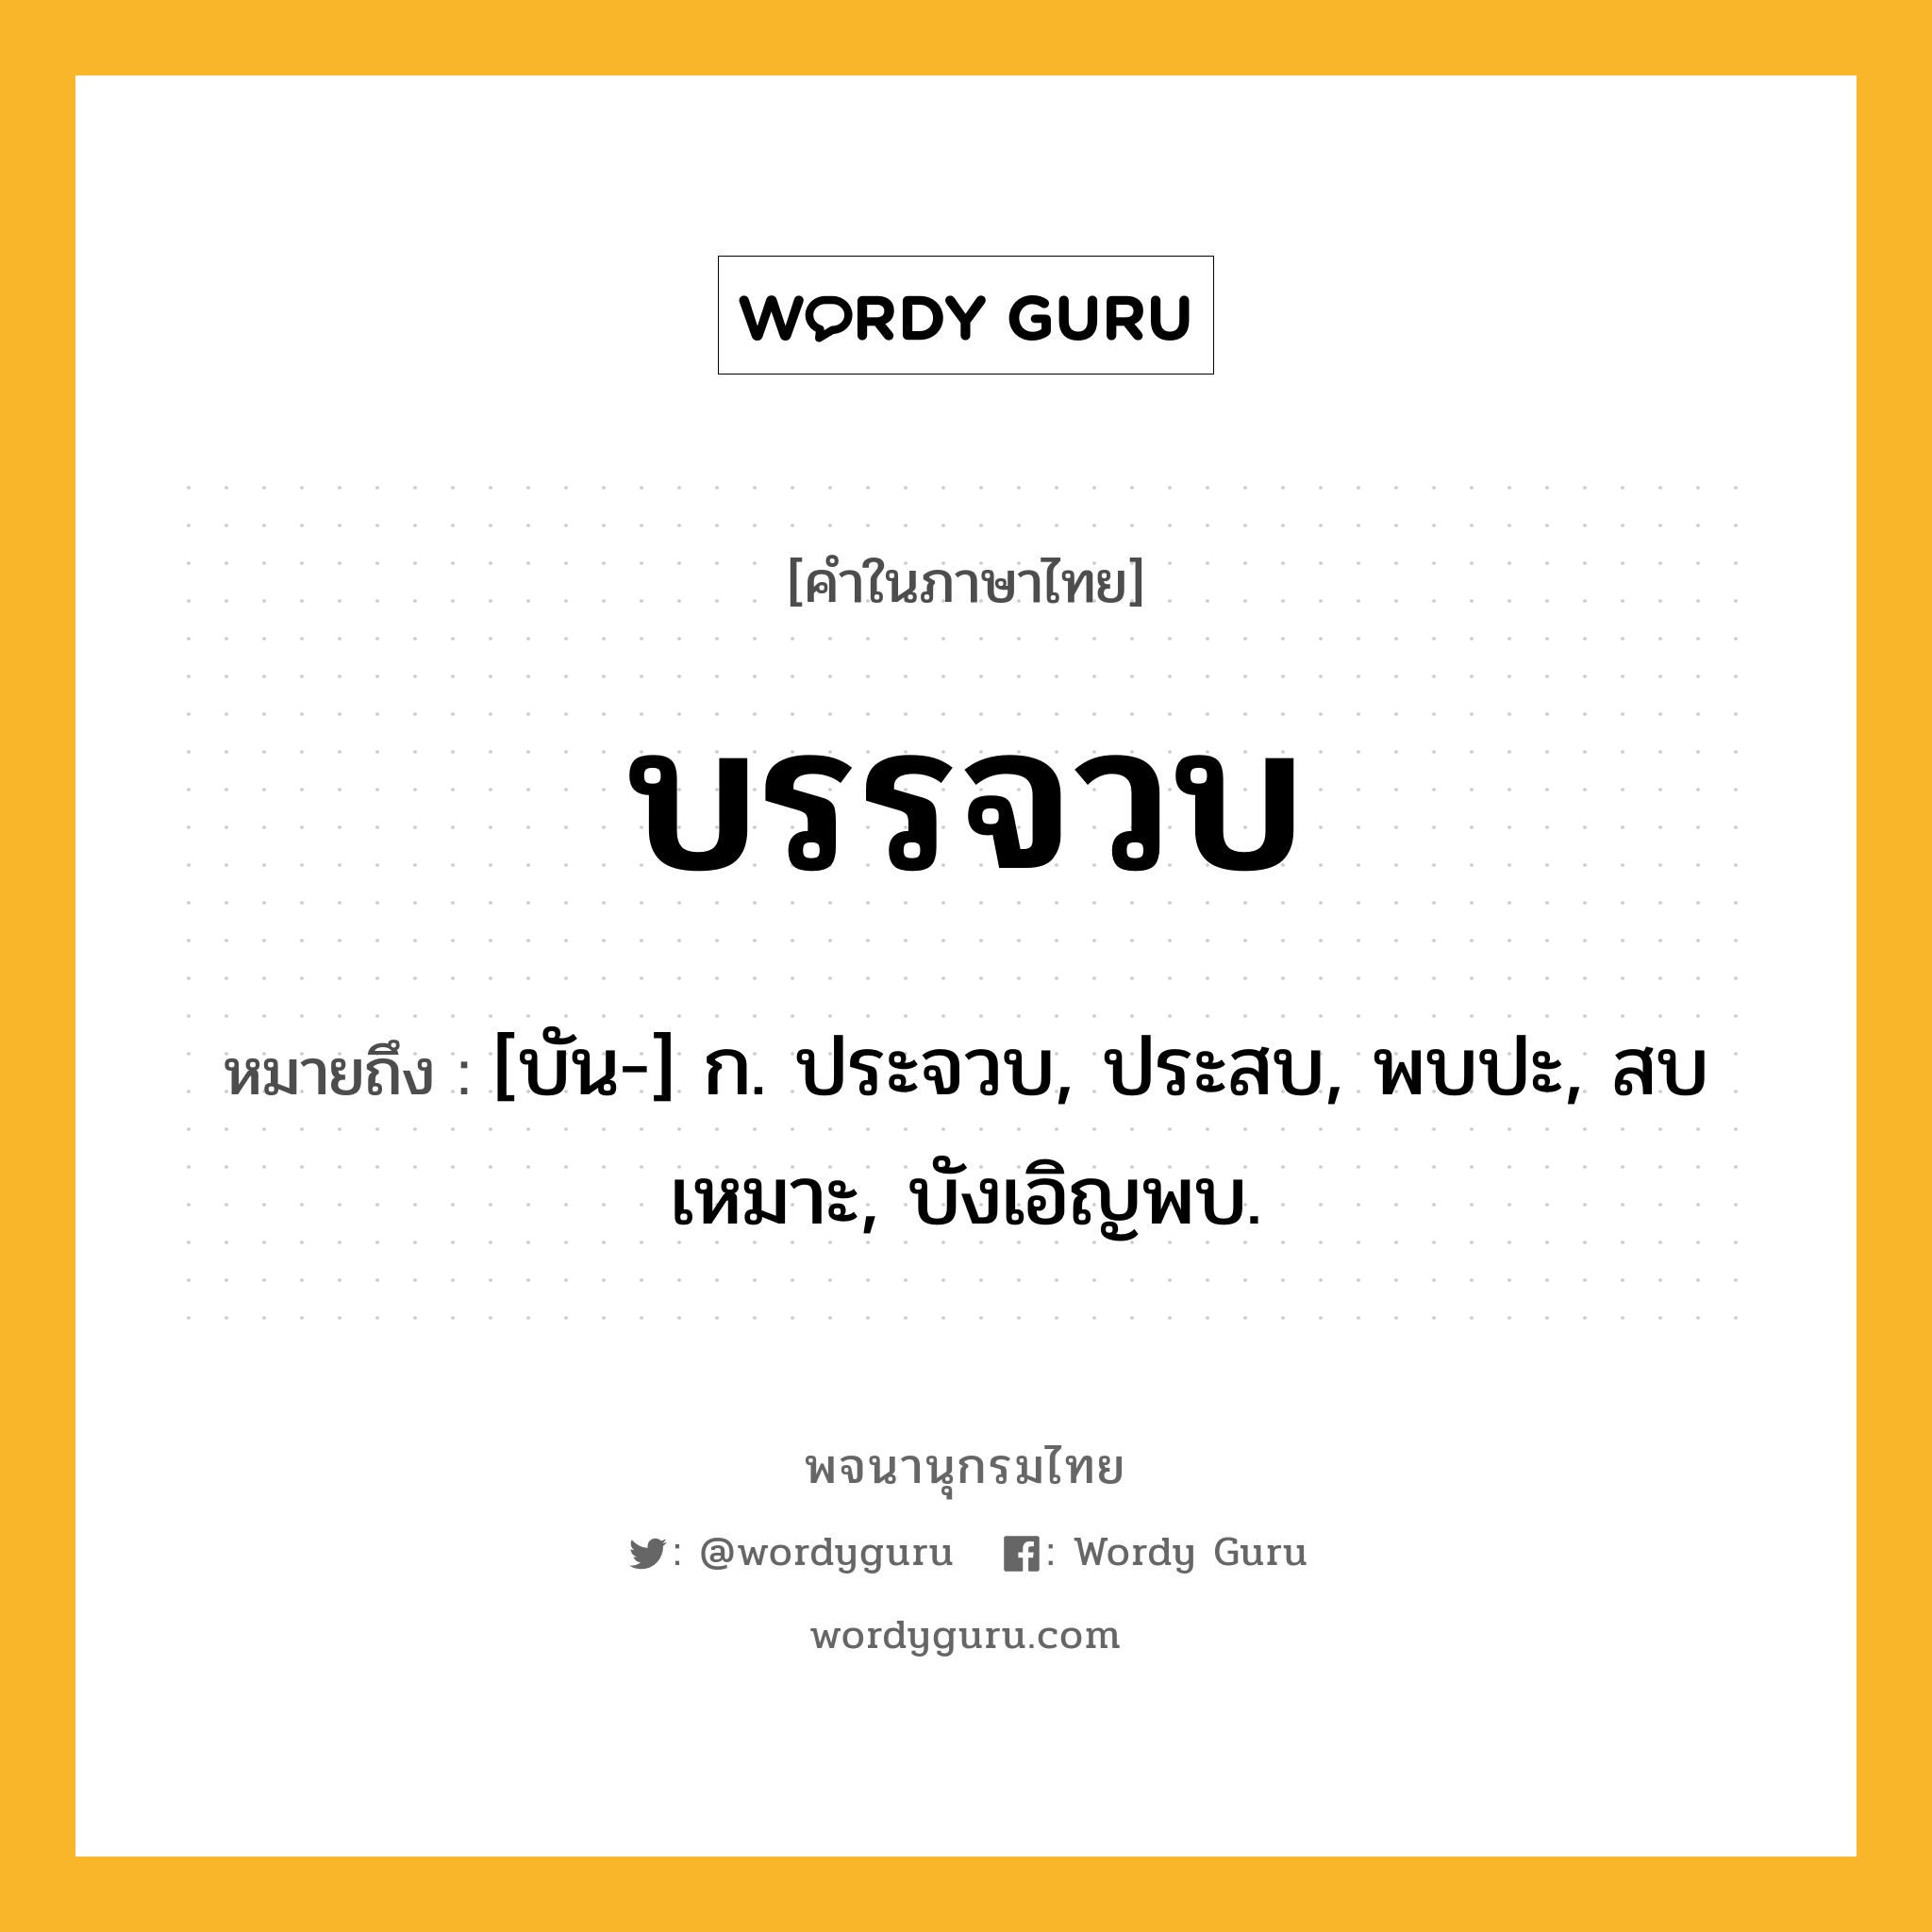 บรรจวบ ความหมาย หมายถึงอะไร?, คำในภาษาไทย บรรจวบ หมายถึง [บัน-] ก. ประจวบ, ประสบ, พบปะ, สบเหมาะ, บังเอิญพบ.